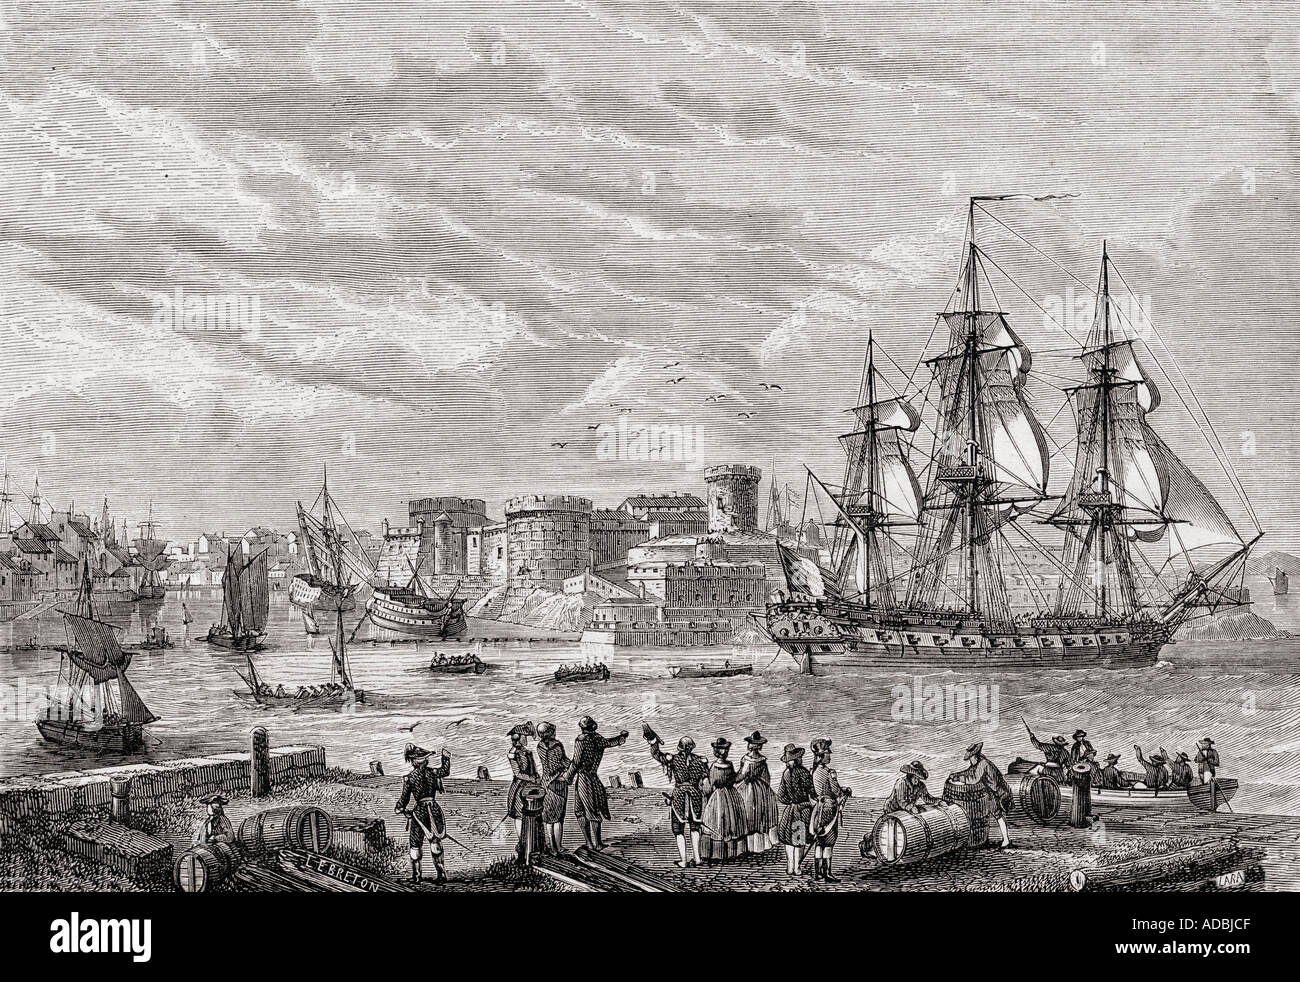 Brest, en France en 1791. Gravée par LeBreton. De l'histoire de la Revolution Francaise par Louis Blanc Banque D'Images